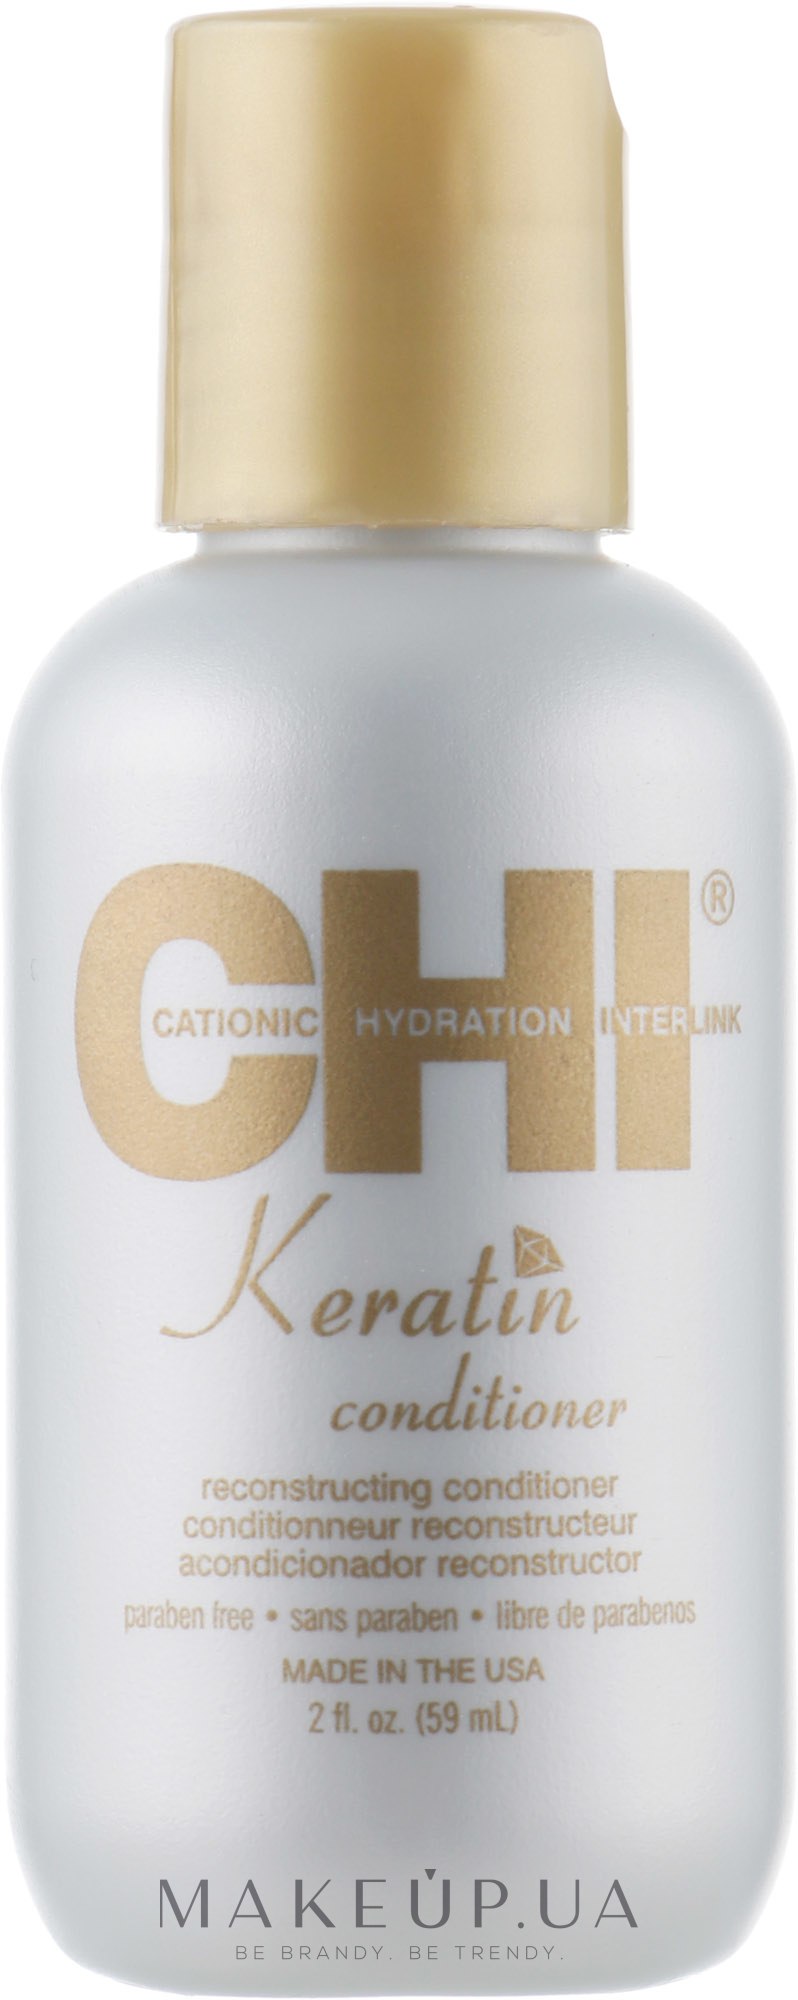 Відновлюючий кератиновий кондиціонер для волосся - CHI Keratin Conditioner — фото 59ml